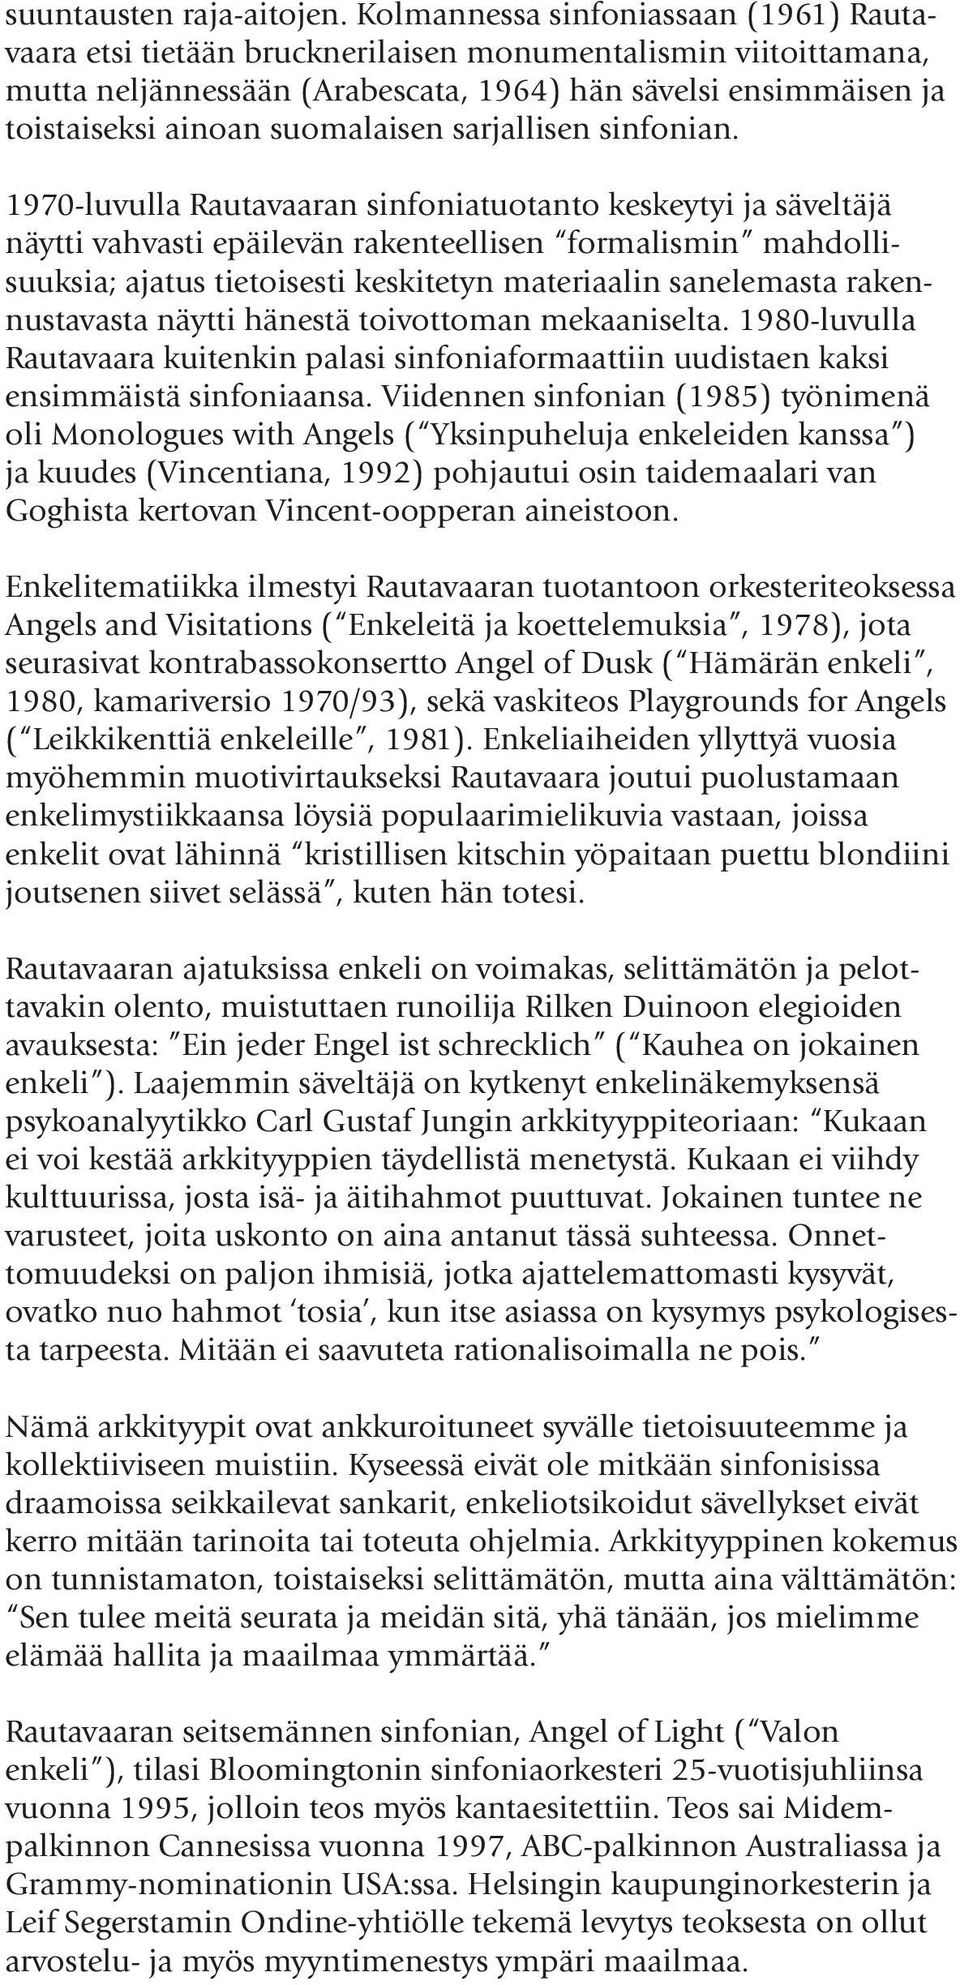 suomalaisen sarjallisen sinfonian.